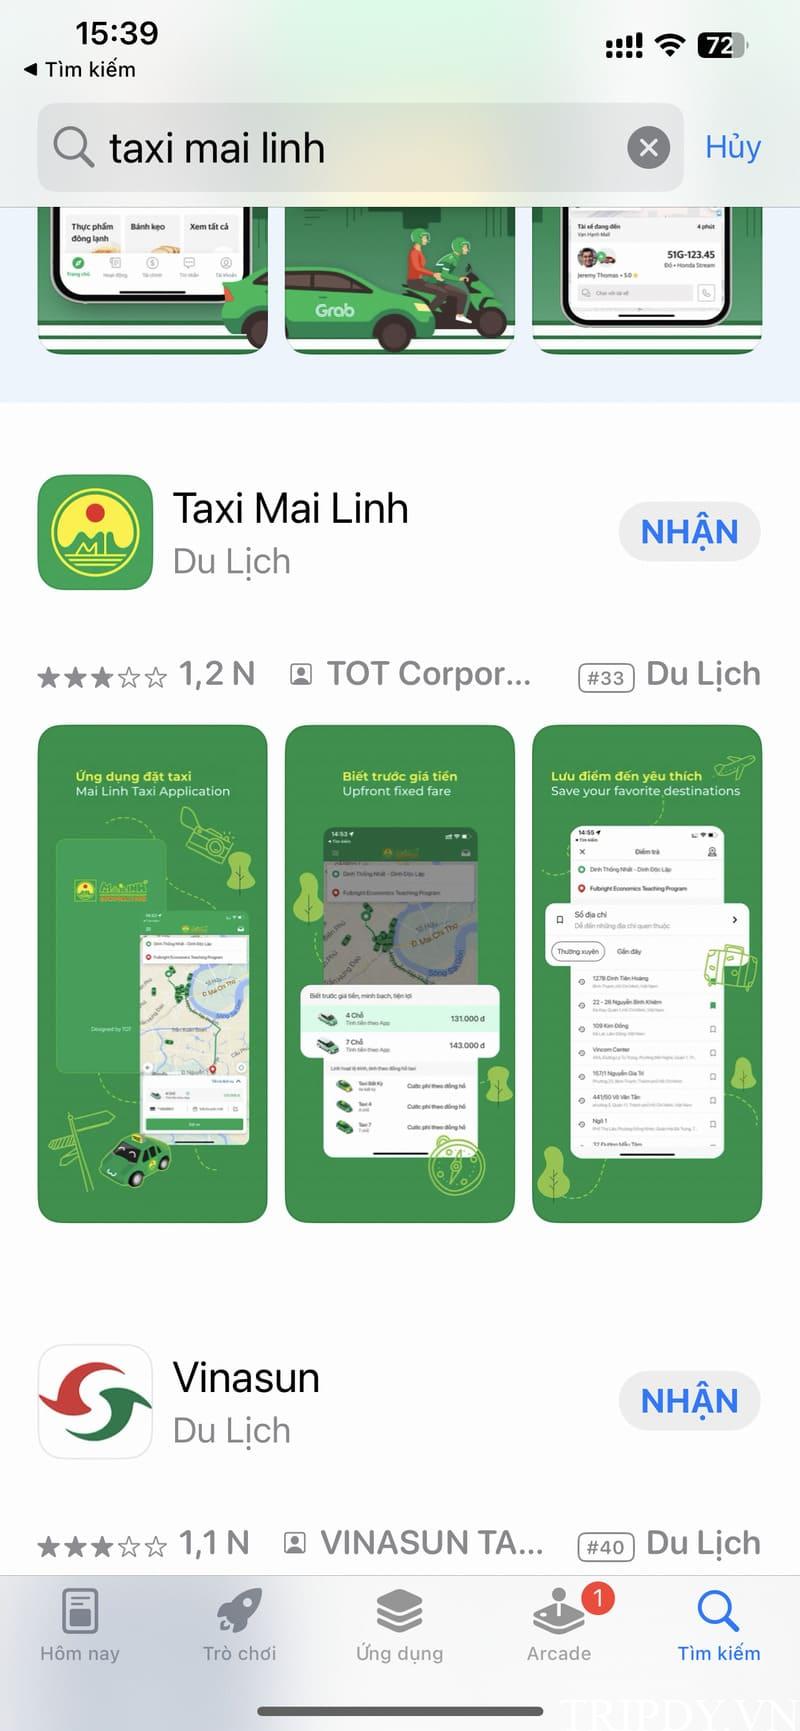 Taxi Mai Linh Tuyên Quang: Số điện thoại tổng đài và giá cước km